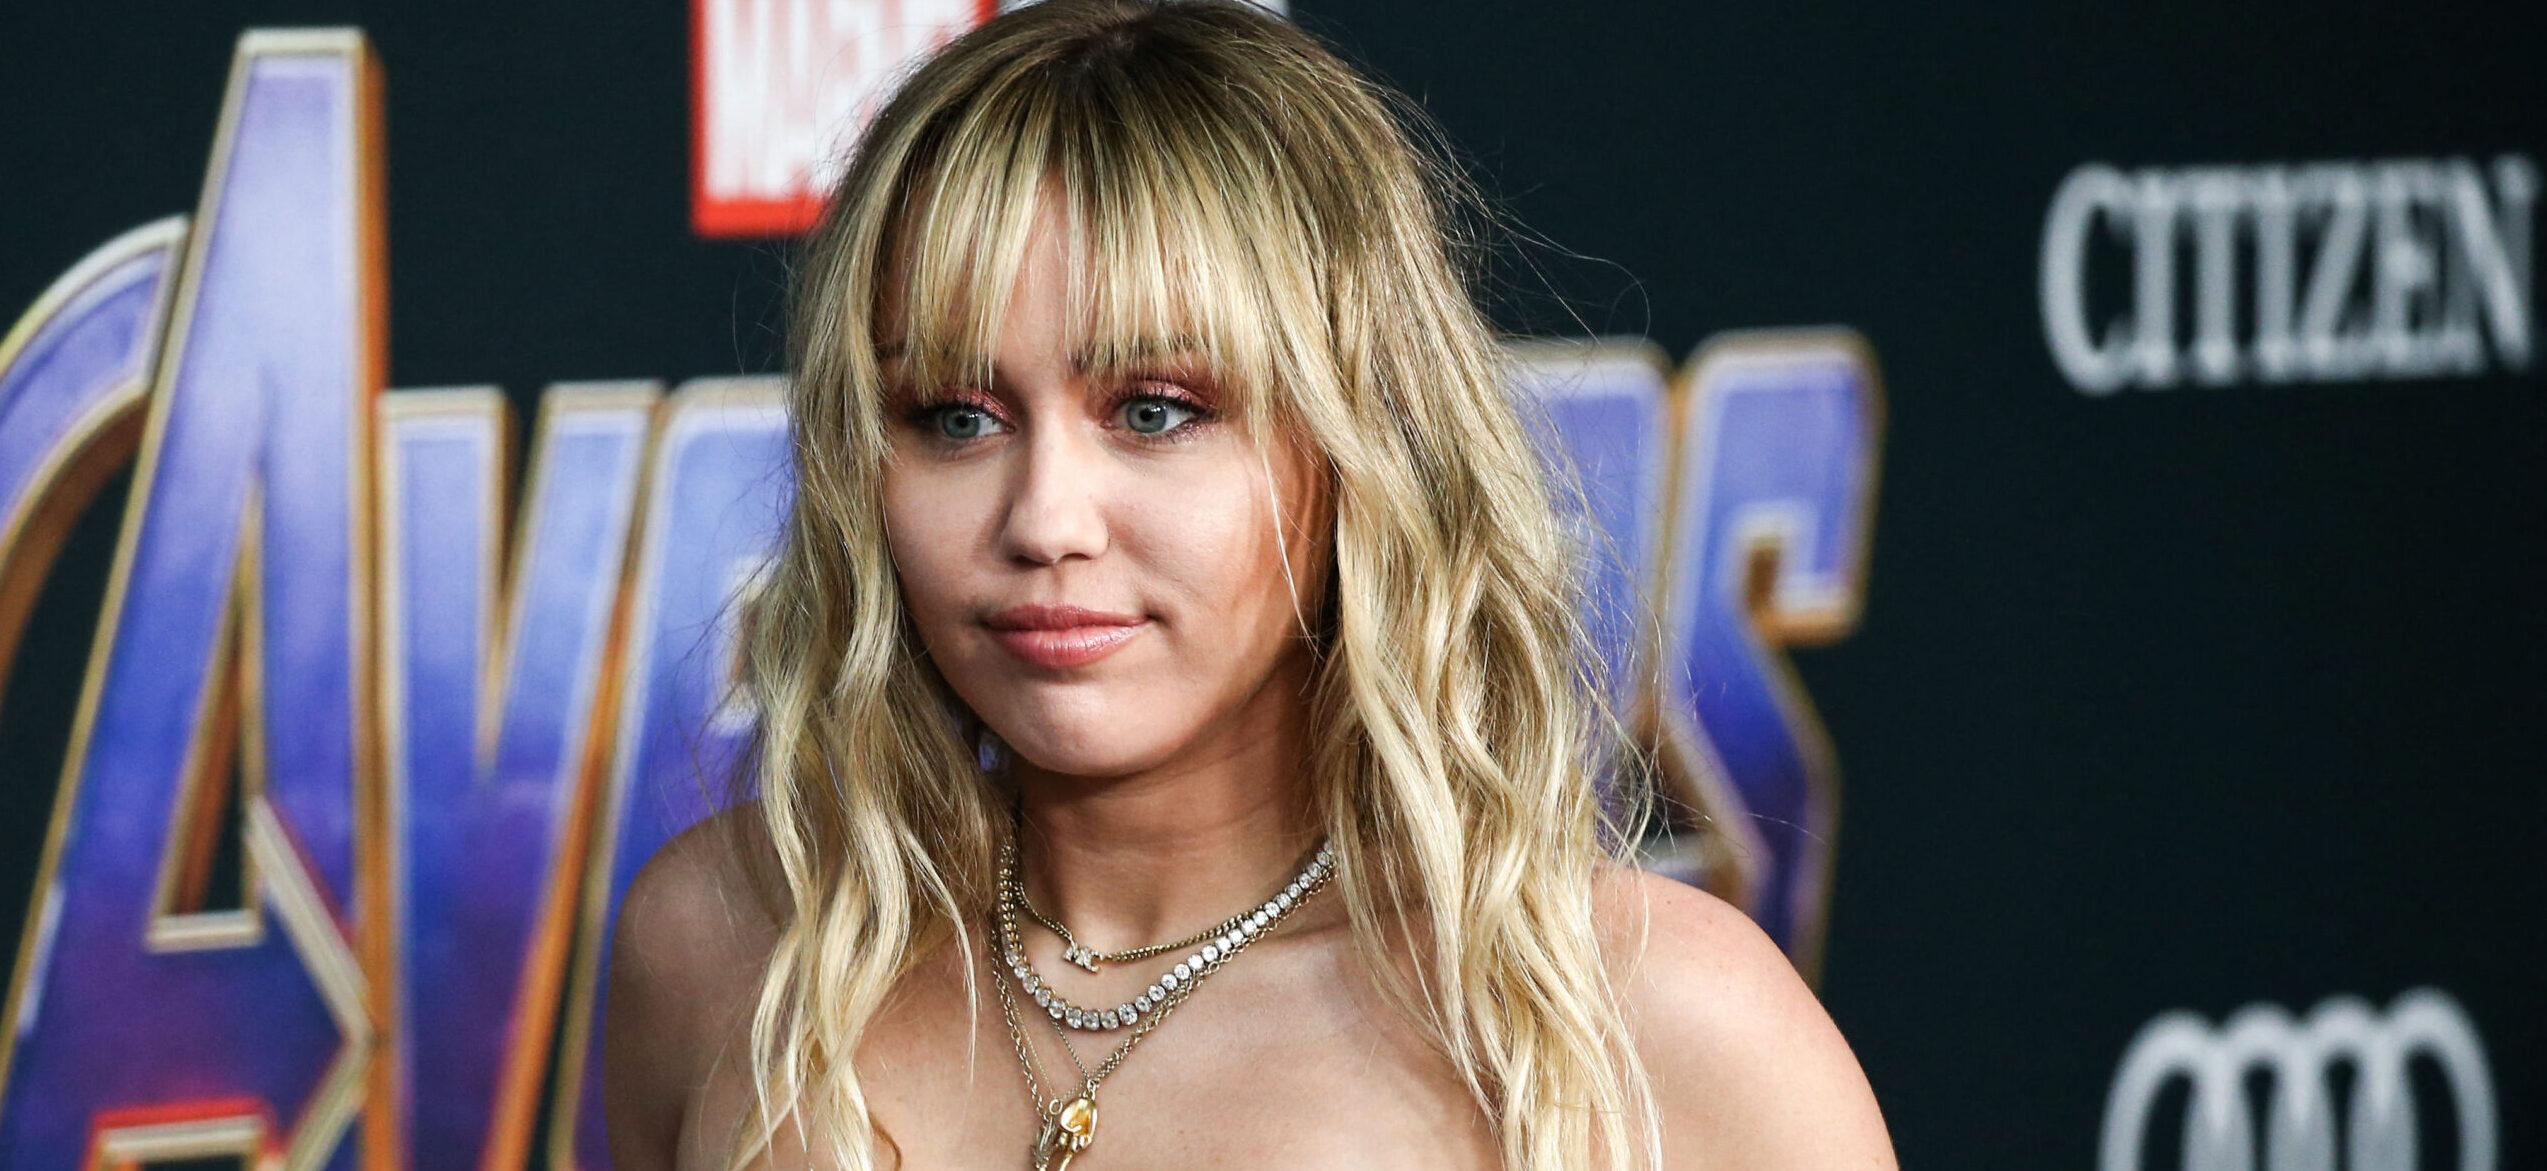 Miley Cyrus’ Obsessed Stalker Arrested After Violating Restraining Order